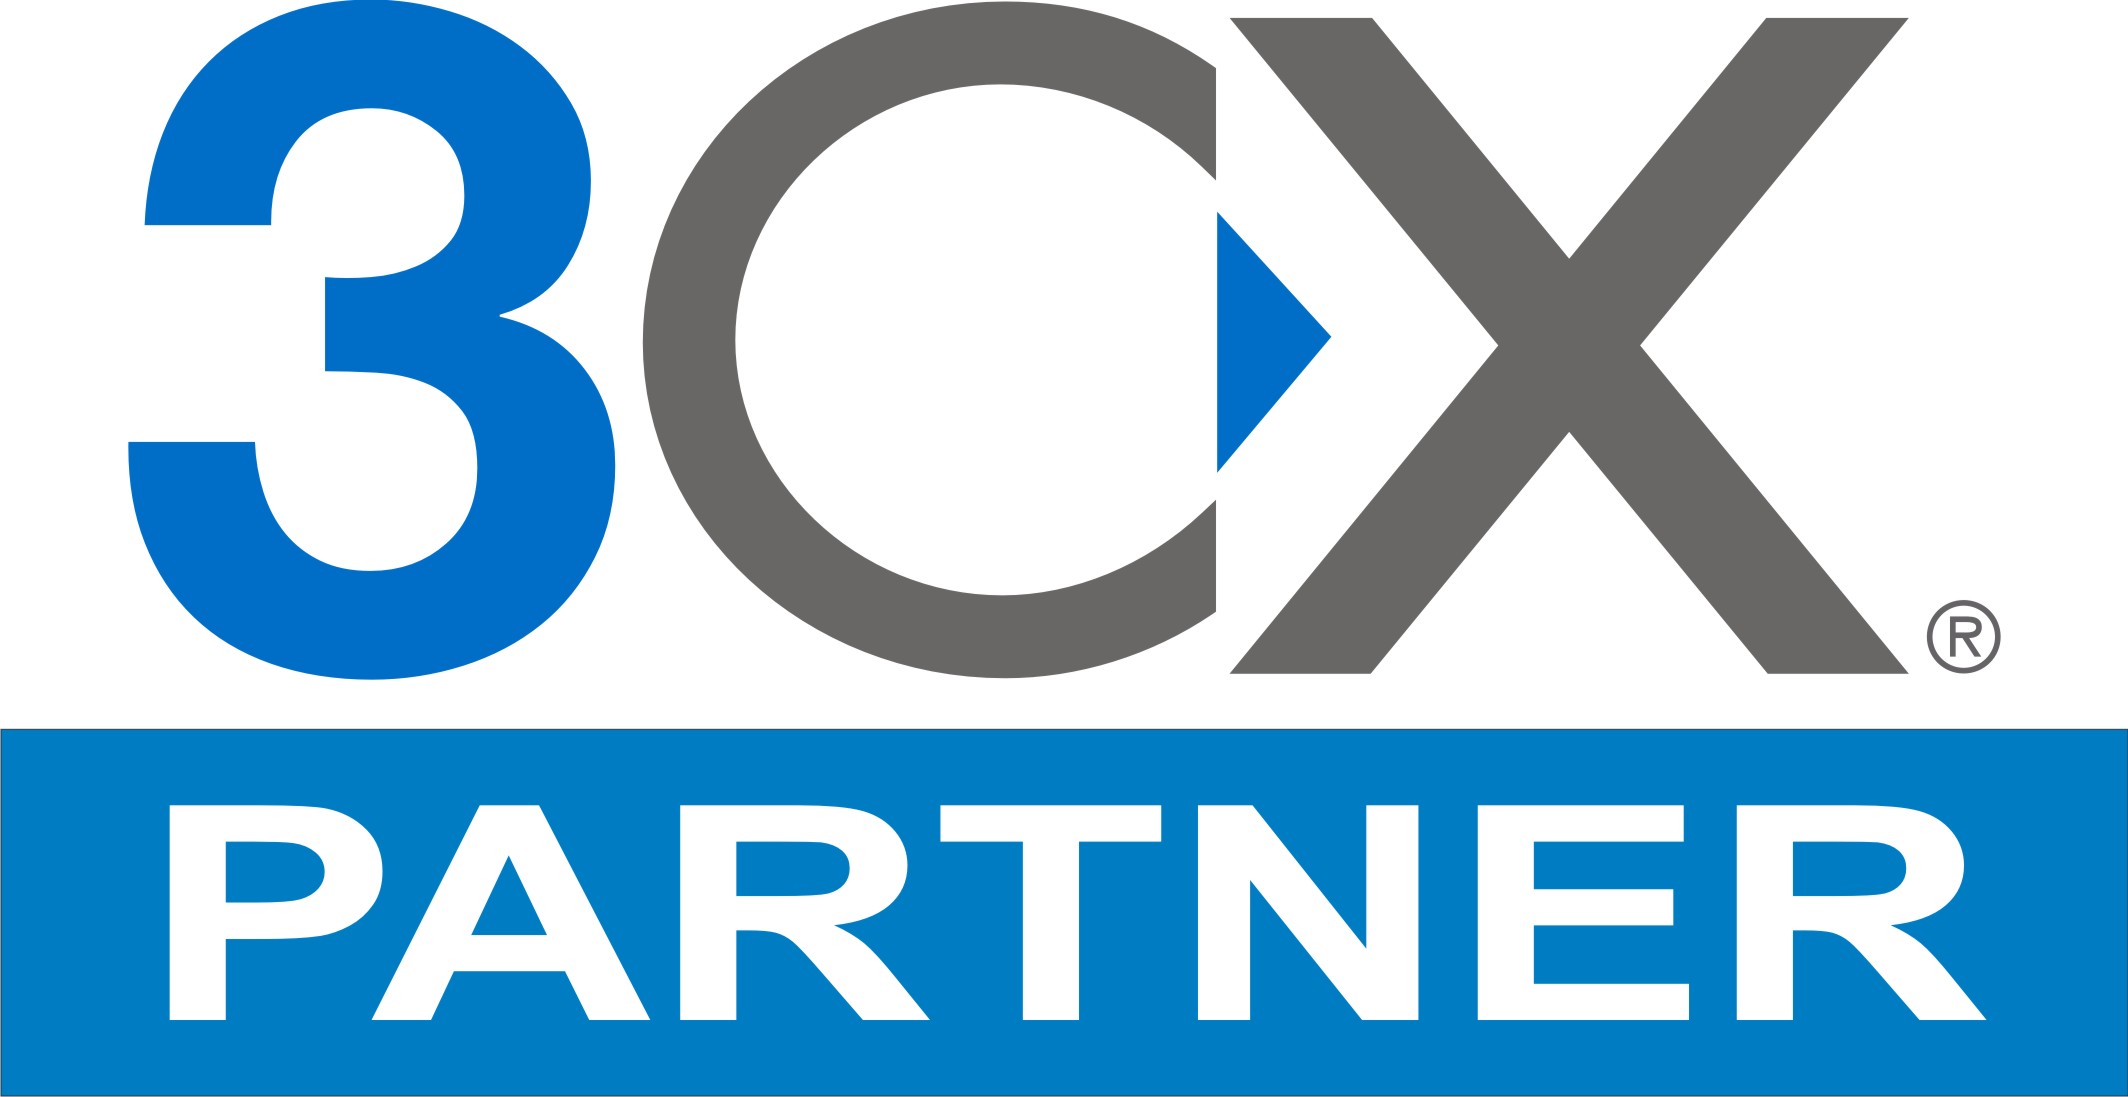 Три сх. Логотип CX. 3cx. Partner 3cx. 3cx partner logo.